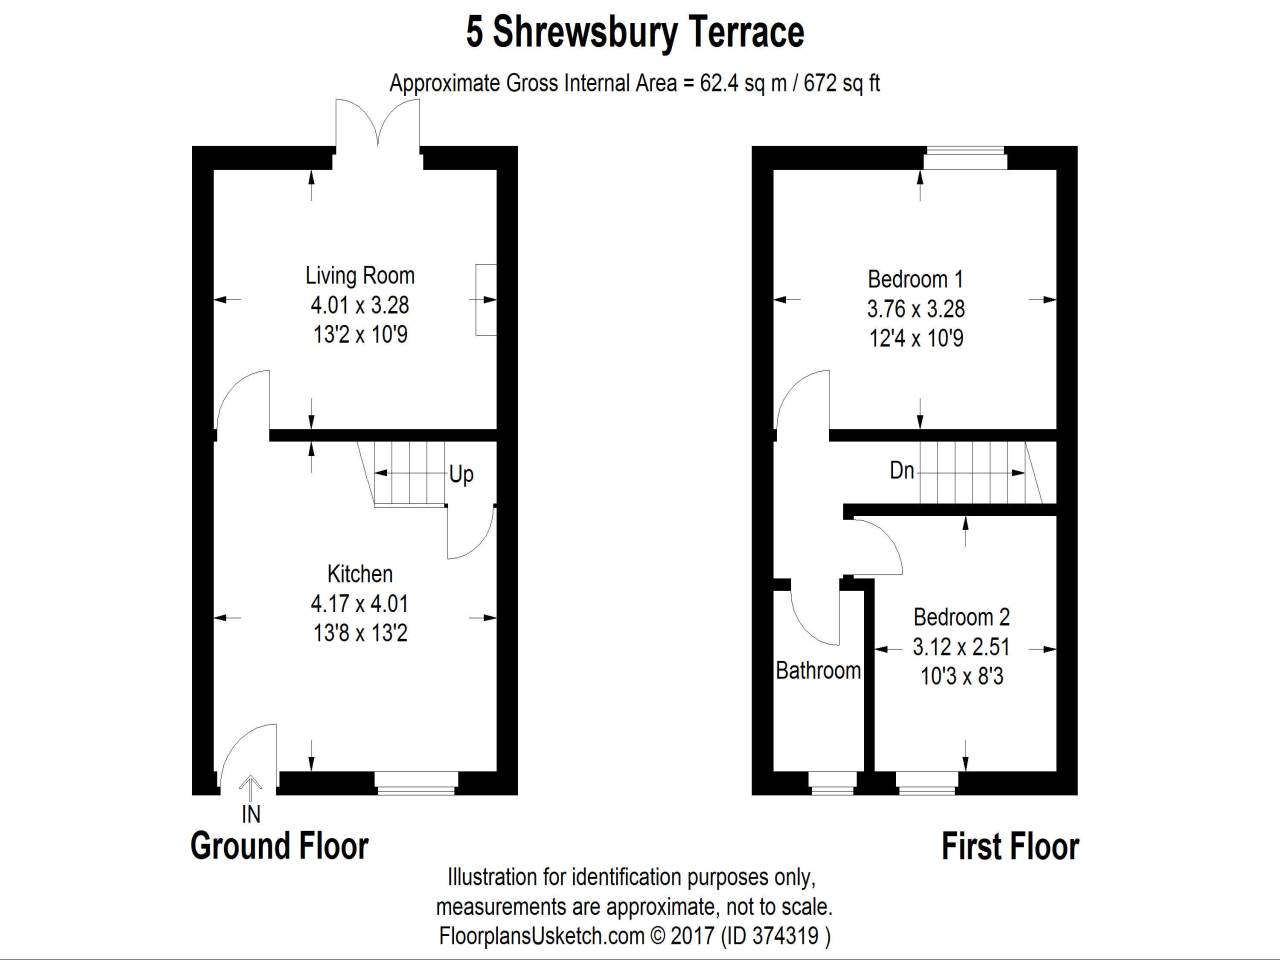 2 Bedrooms Terraced house to rent in Shrewsbury Terrace, Buckingham Road, Newbury RG14